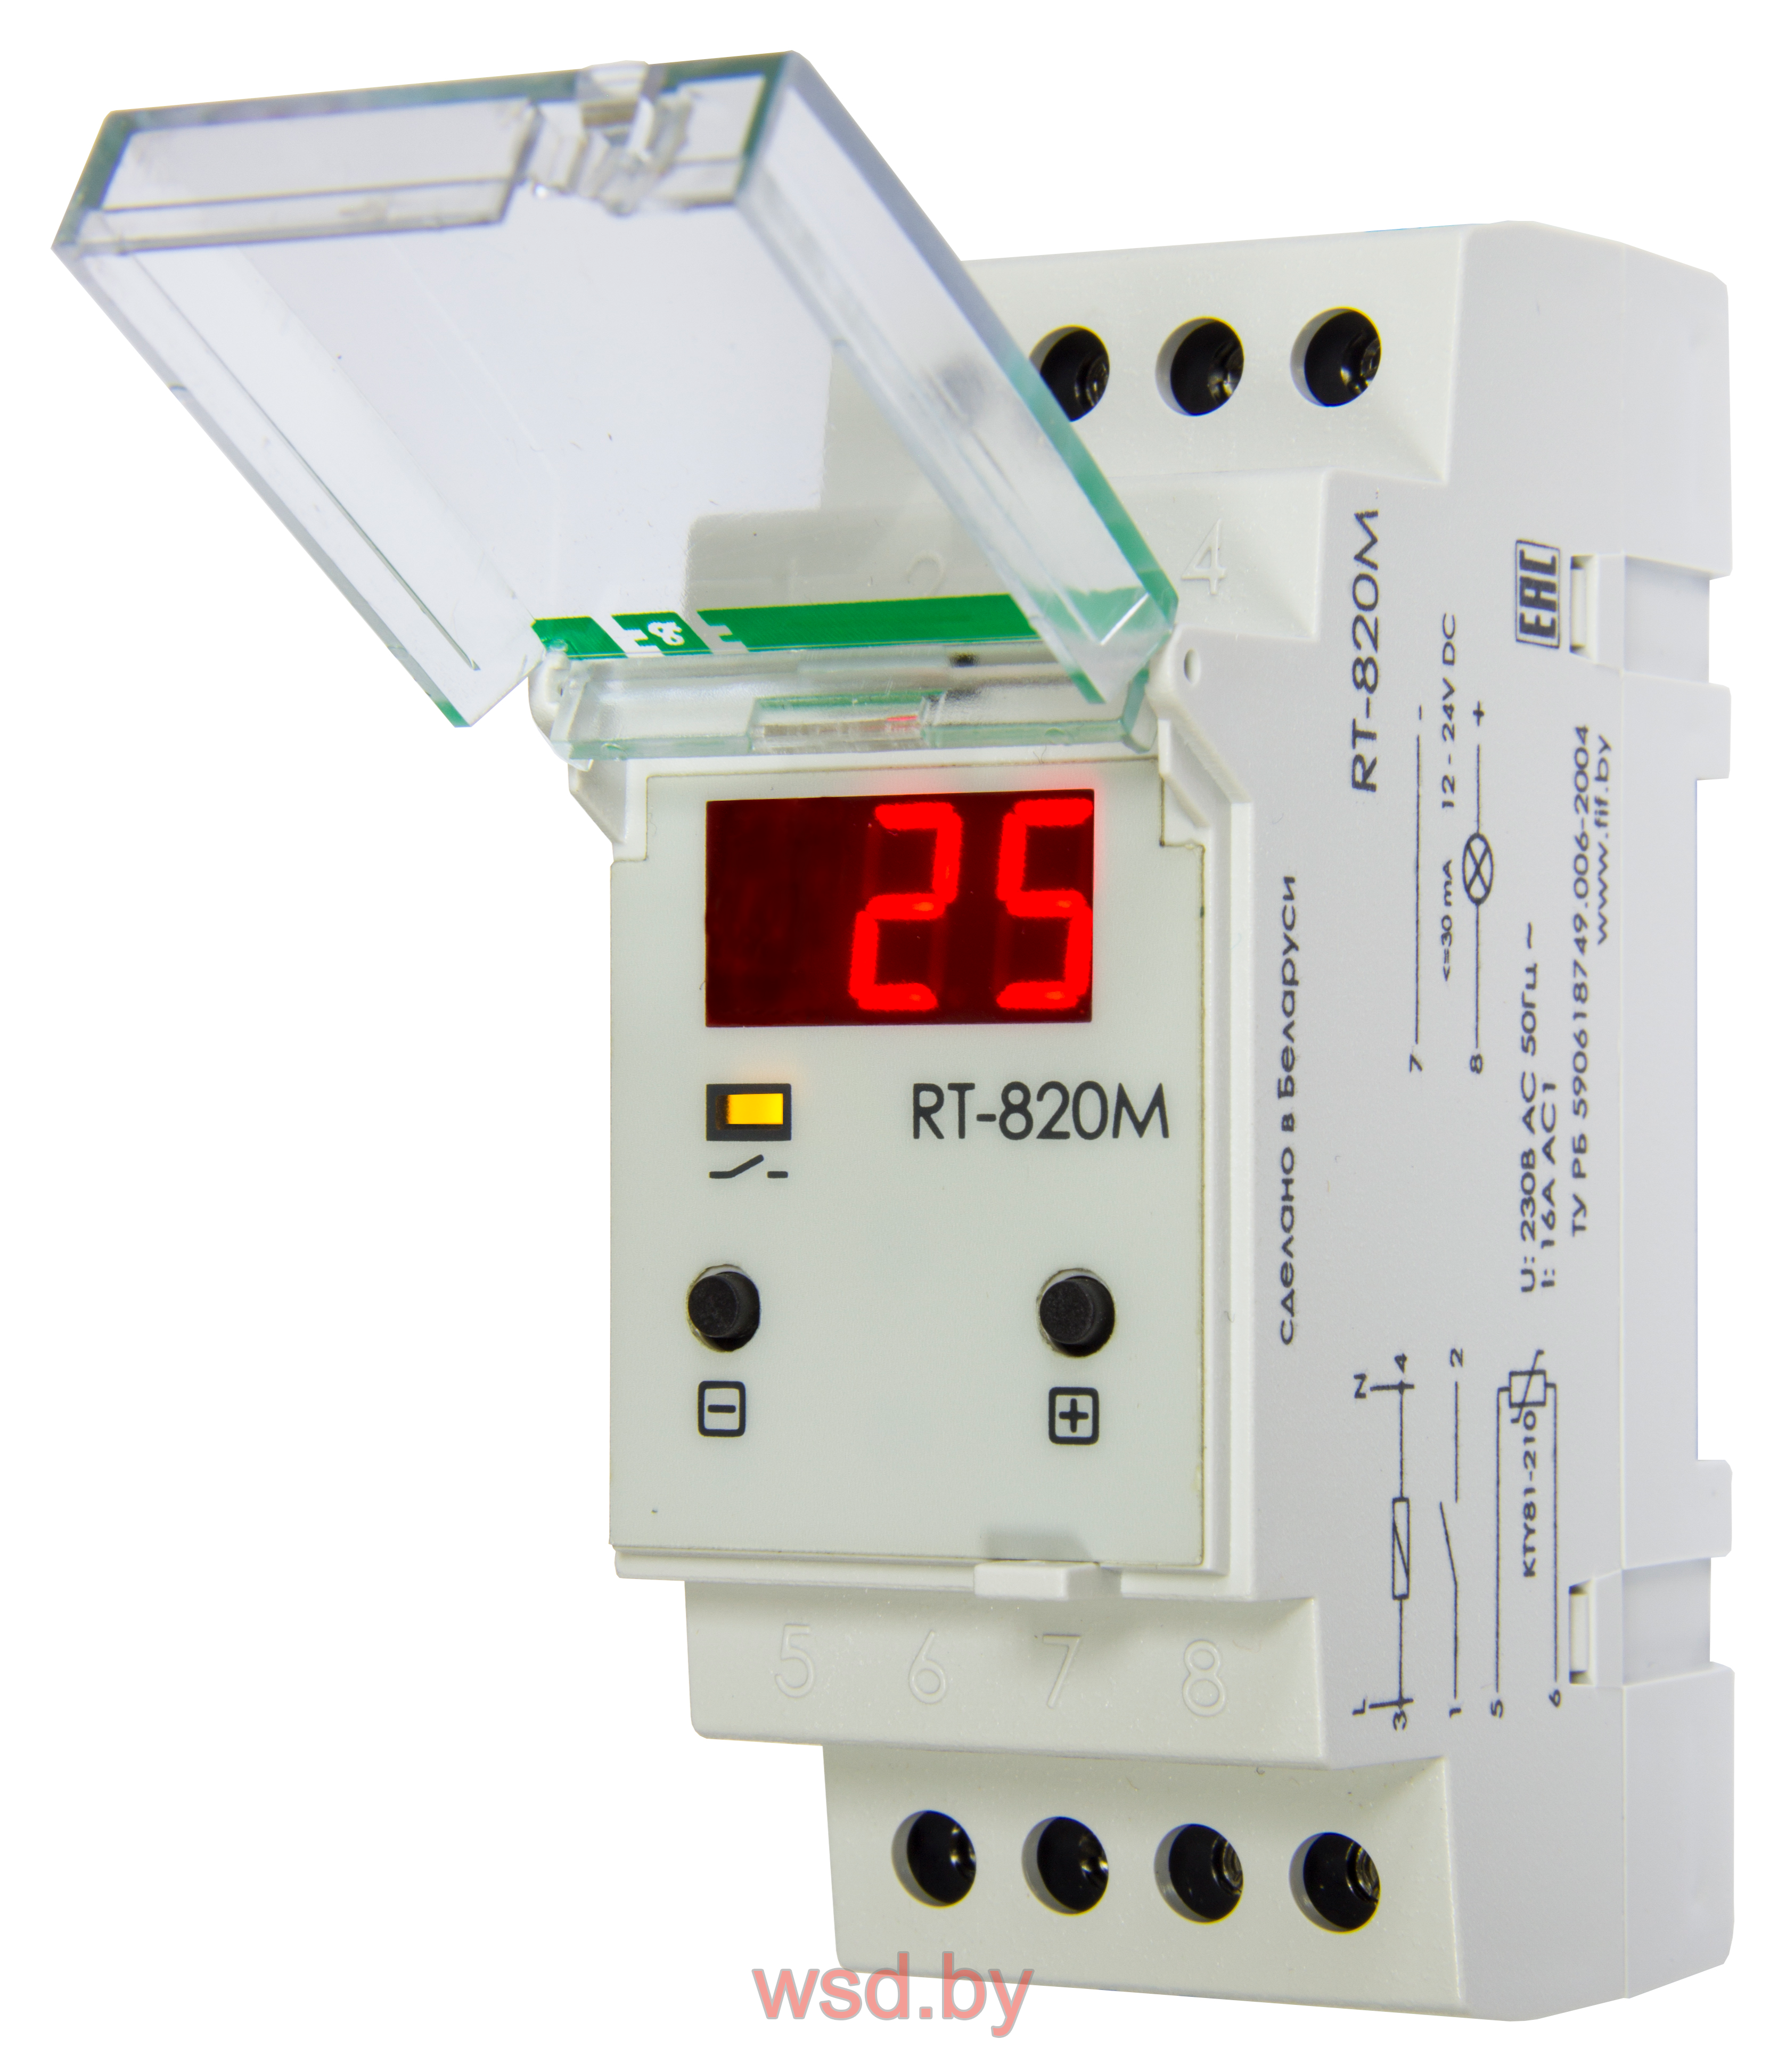 RT-820M Регулятор температуры цифровой диапазон температур -20 до +130°С,, многофункциональный, цифровая индикация, выносной датчик с термоустойчивым проводом в комплекте, 2 модуля, монтаж на DIN-рейке 230В AC 16А  1NO IP20